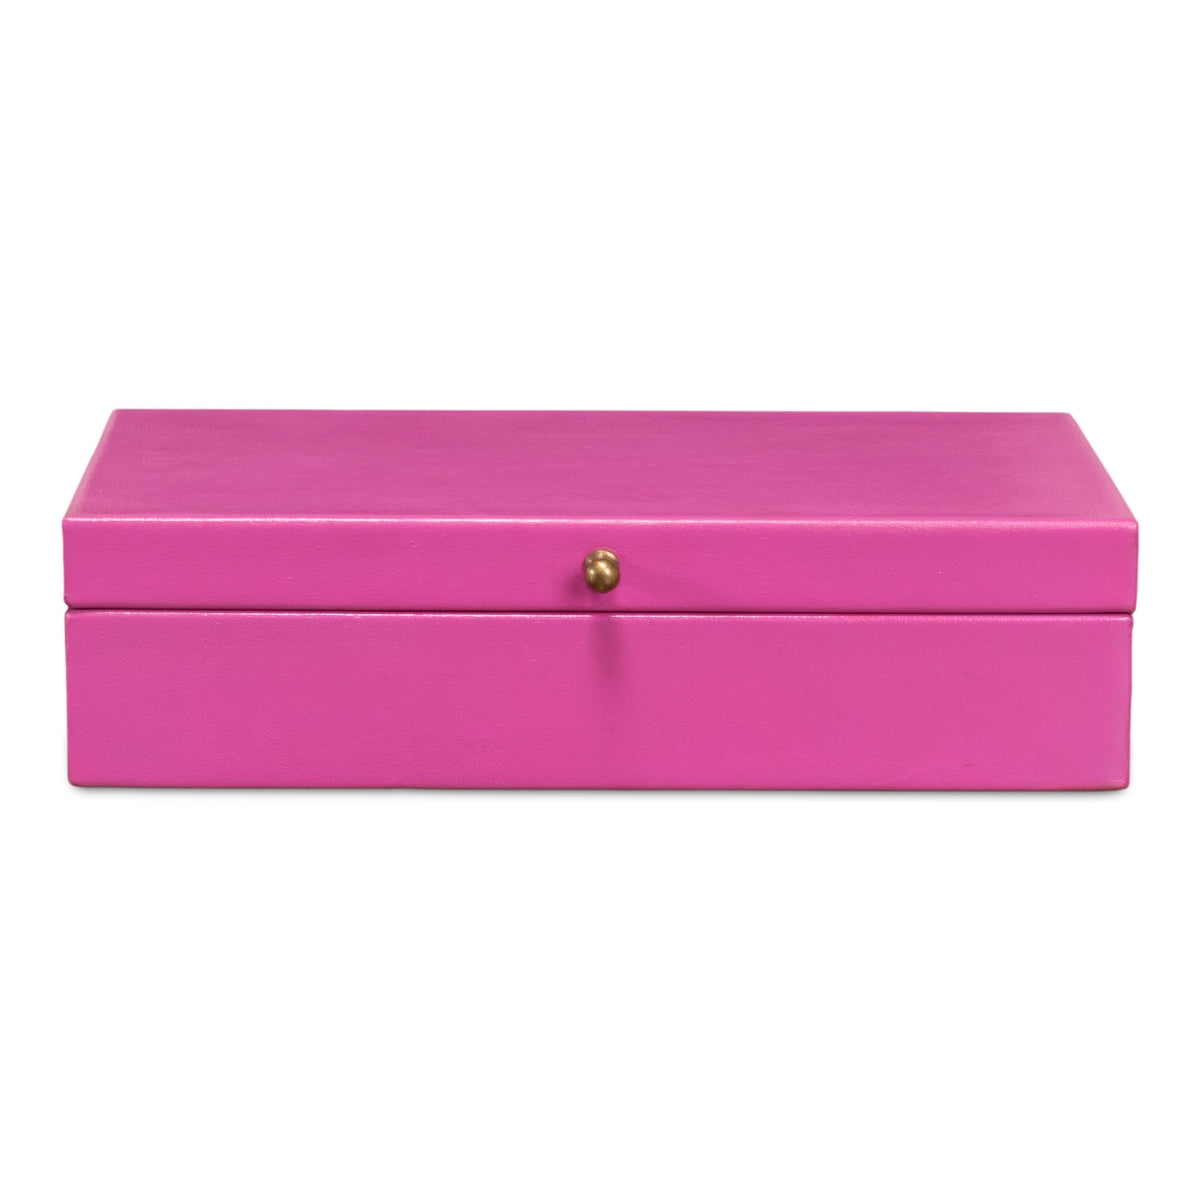 Gatsburg Shagreen Box - Pink